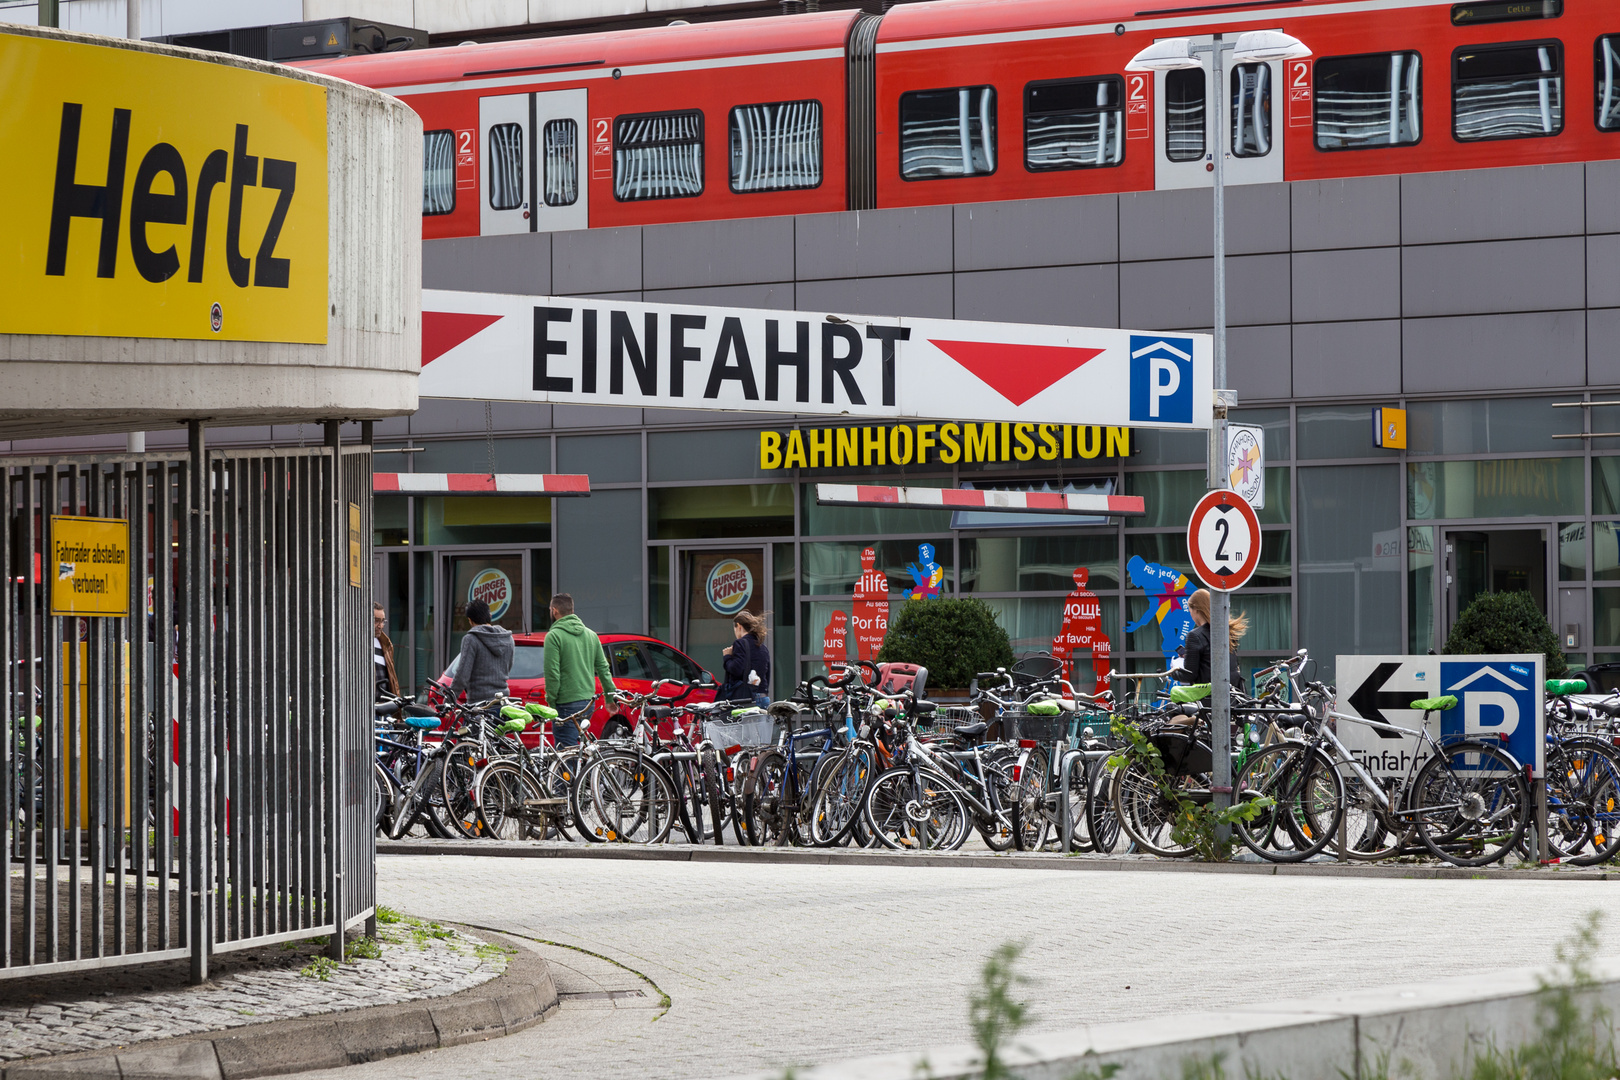 Fahrräder abstellen verboten - Hertz - Einfahrt - Bahnhofsmission - Burgerking - 2m